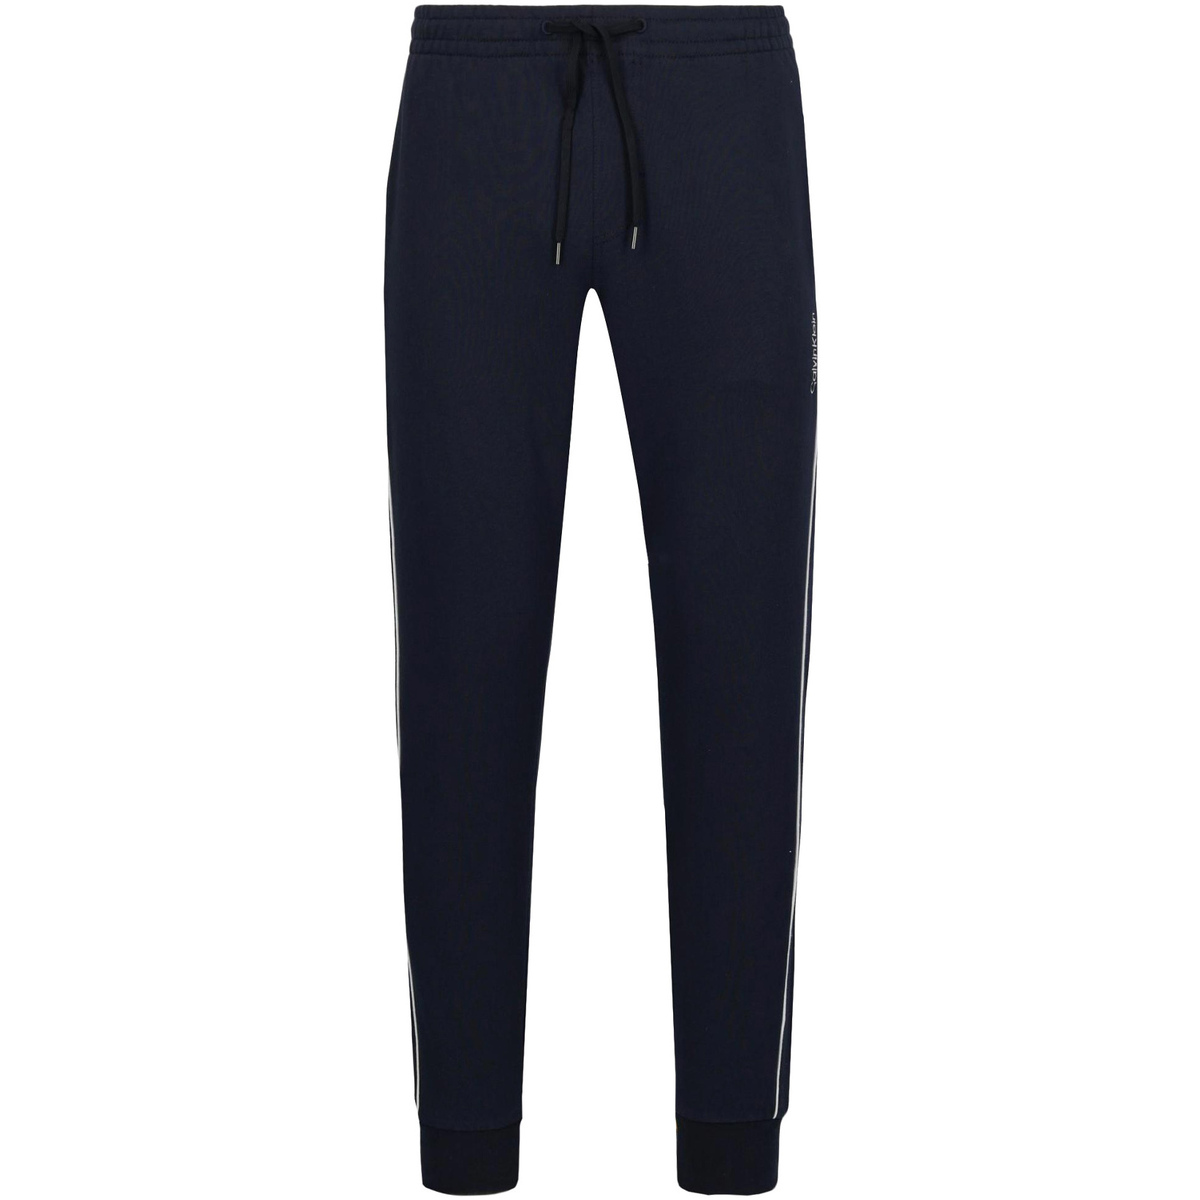 Abbigliamento Uomo Pantaloni Calvin Klein Jeans K10K103090 Blu